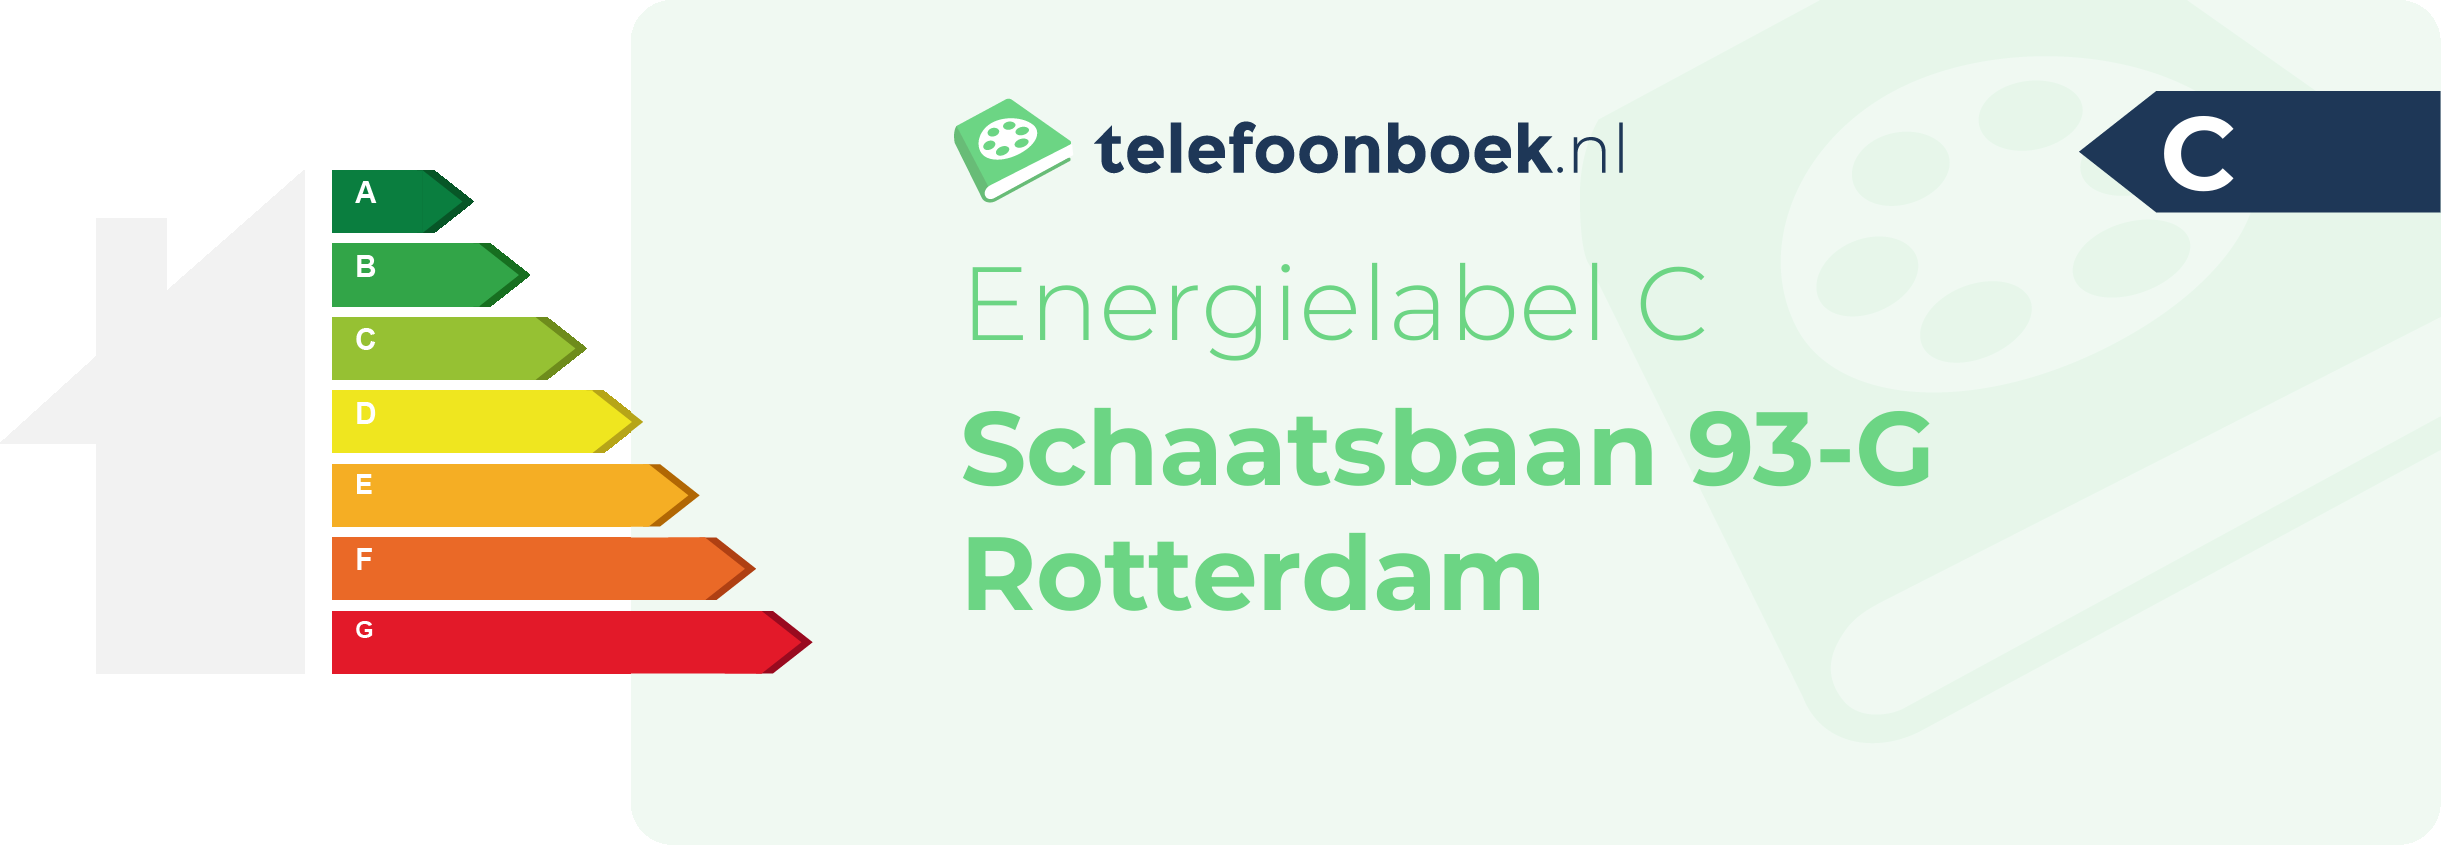 Energielabel Schaatsbaan 93-G Rotterdam